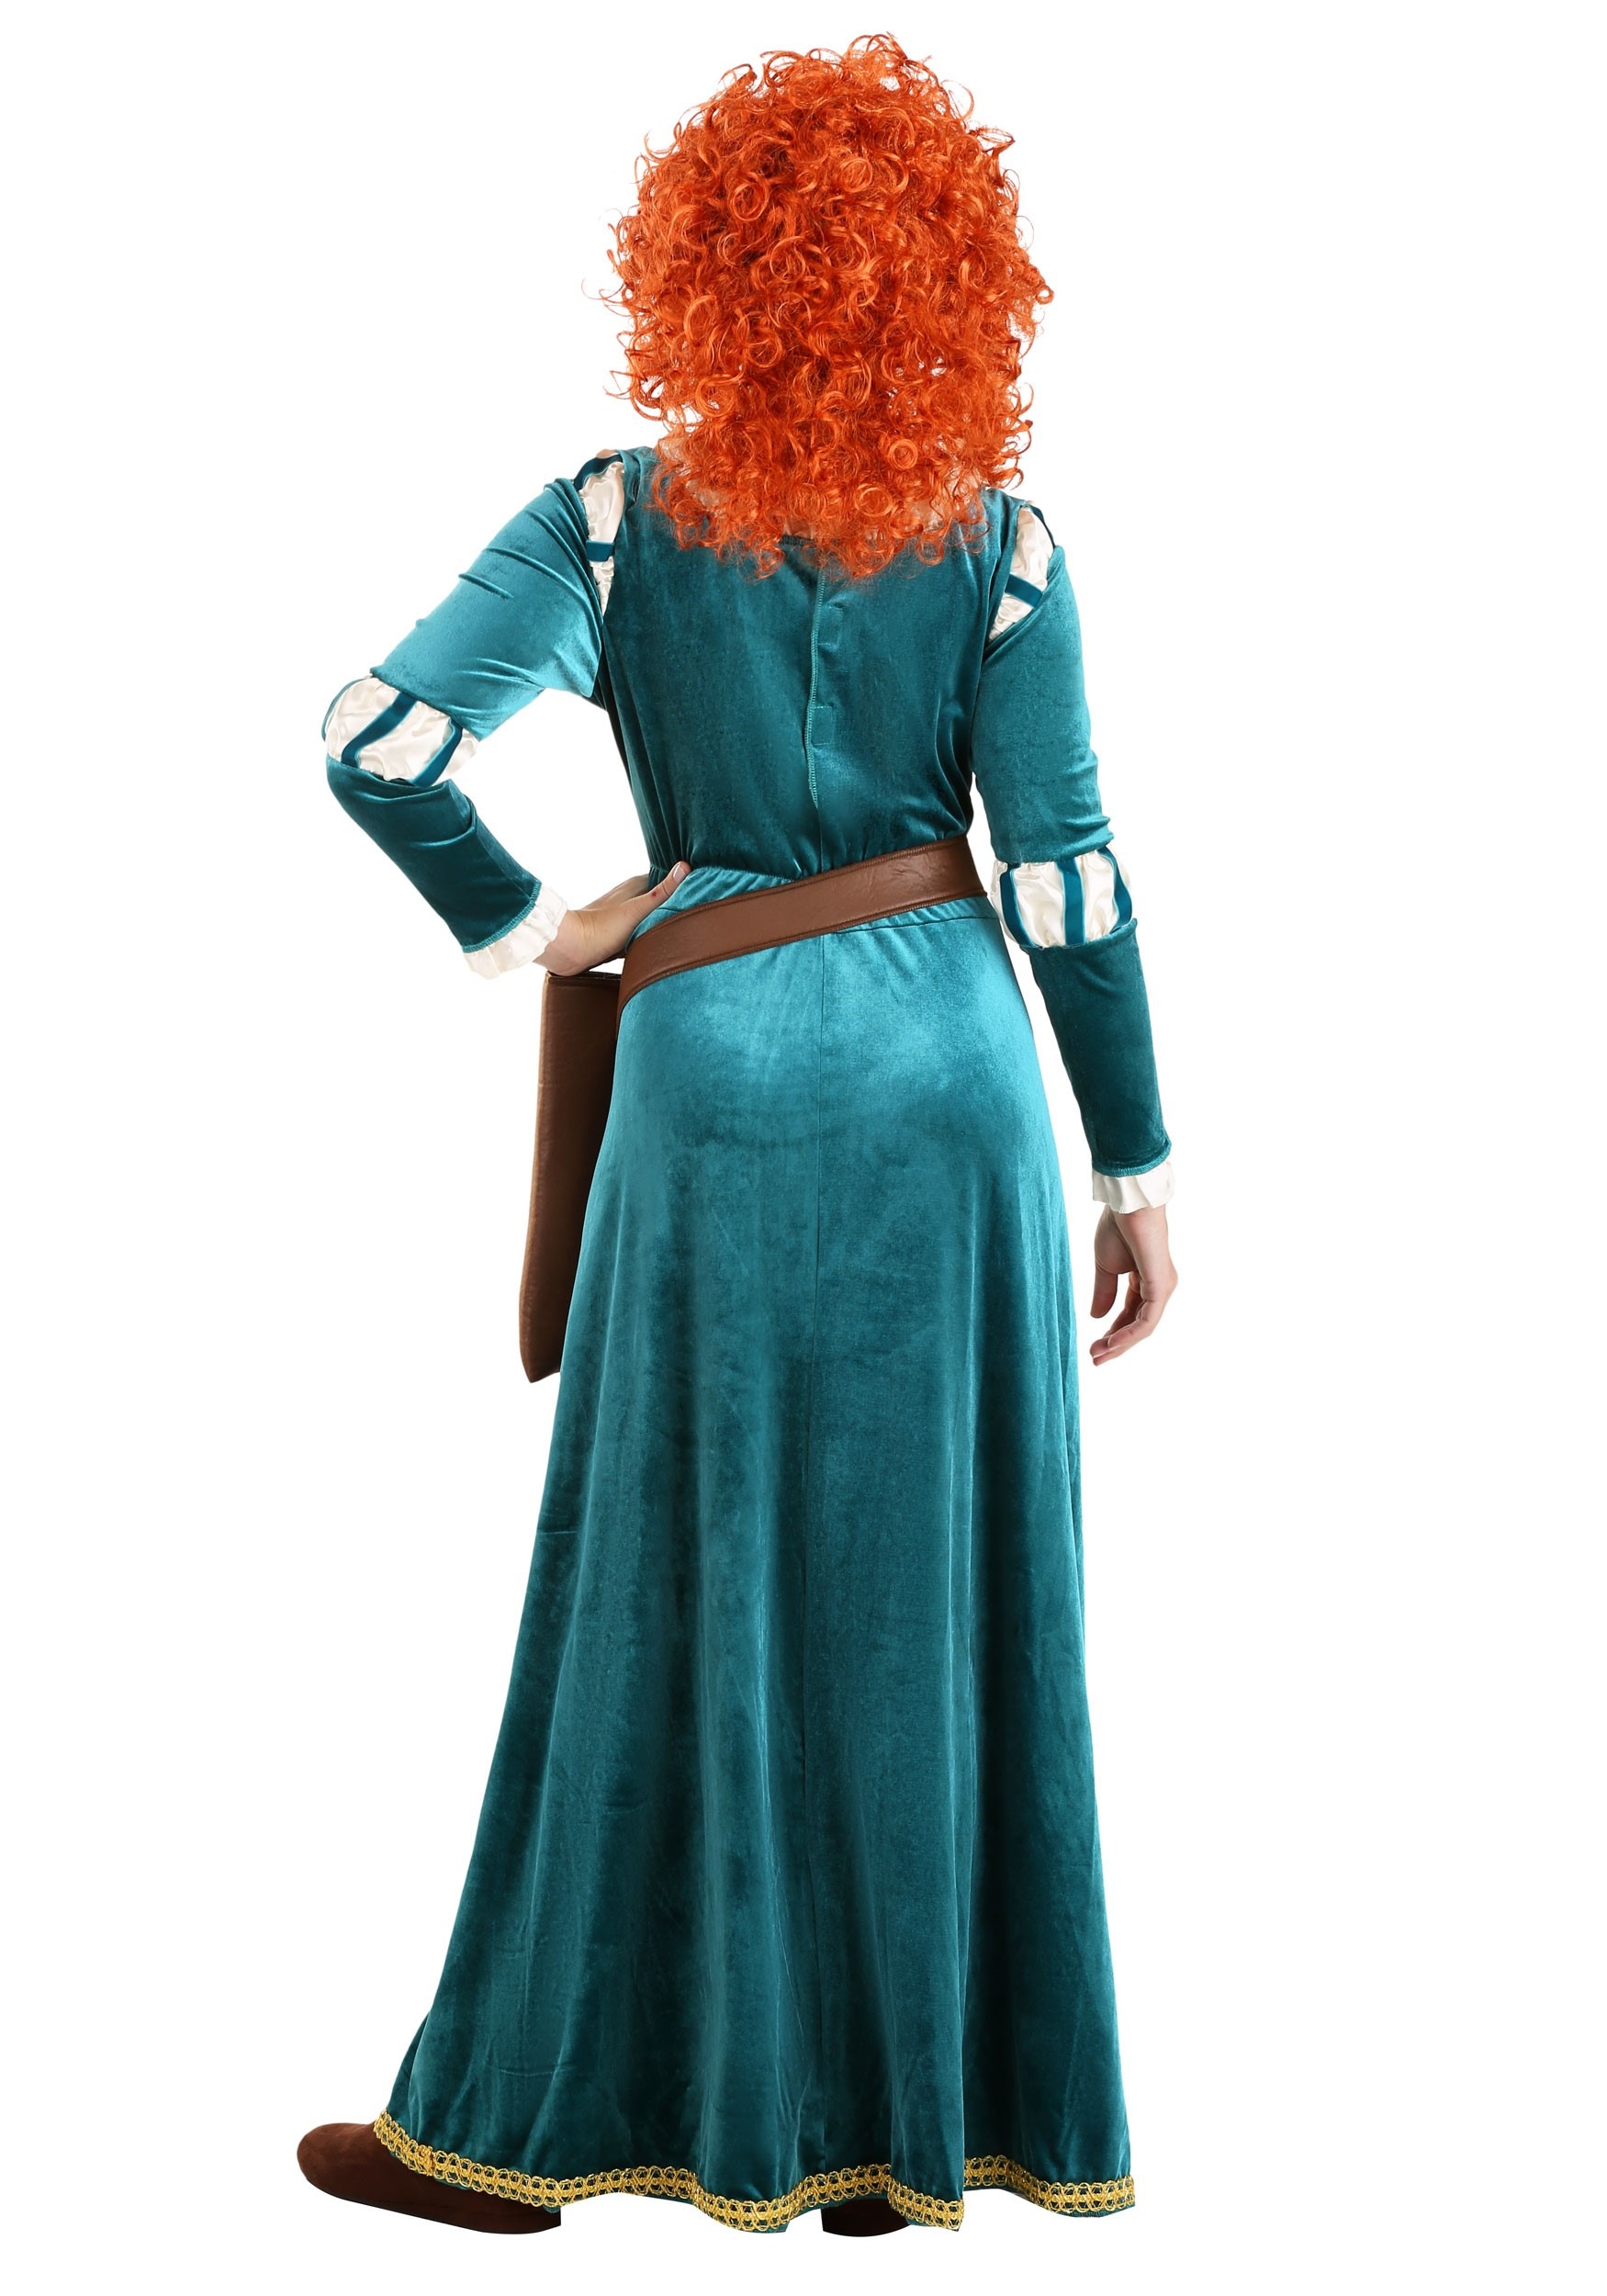 Women's Disney Brave Merida Costume